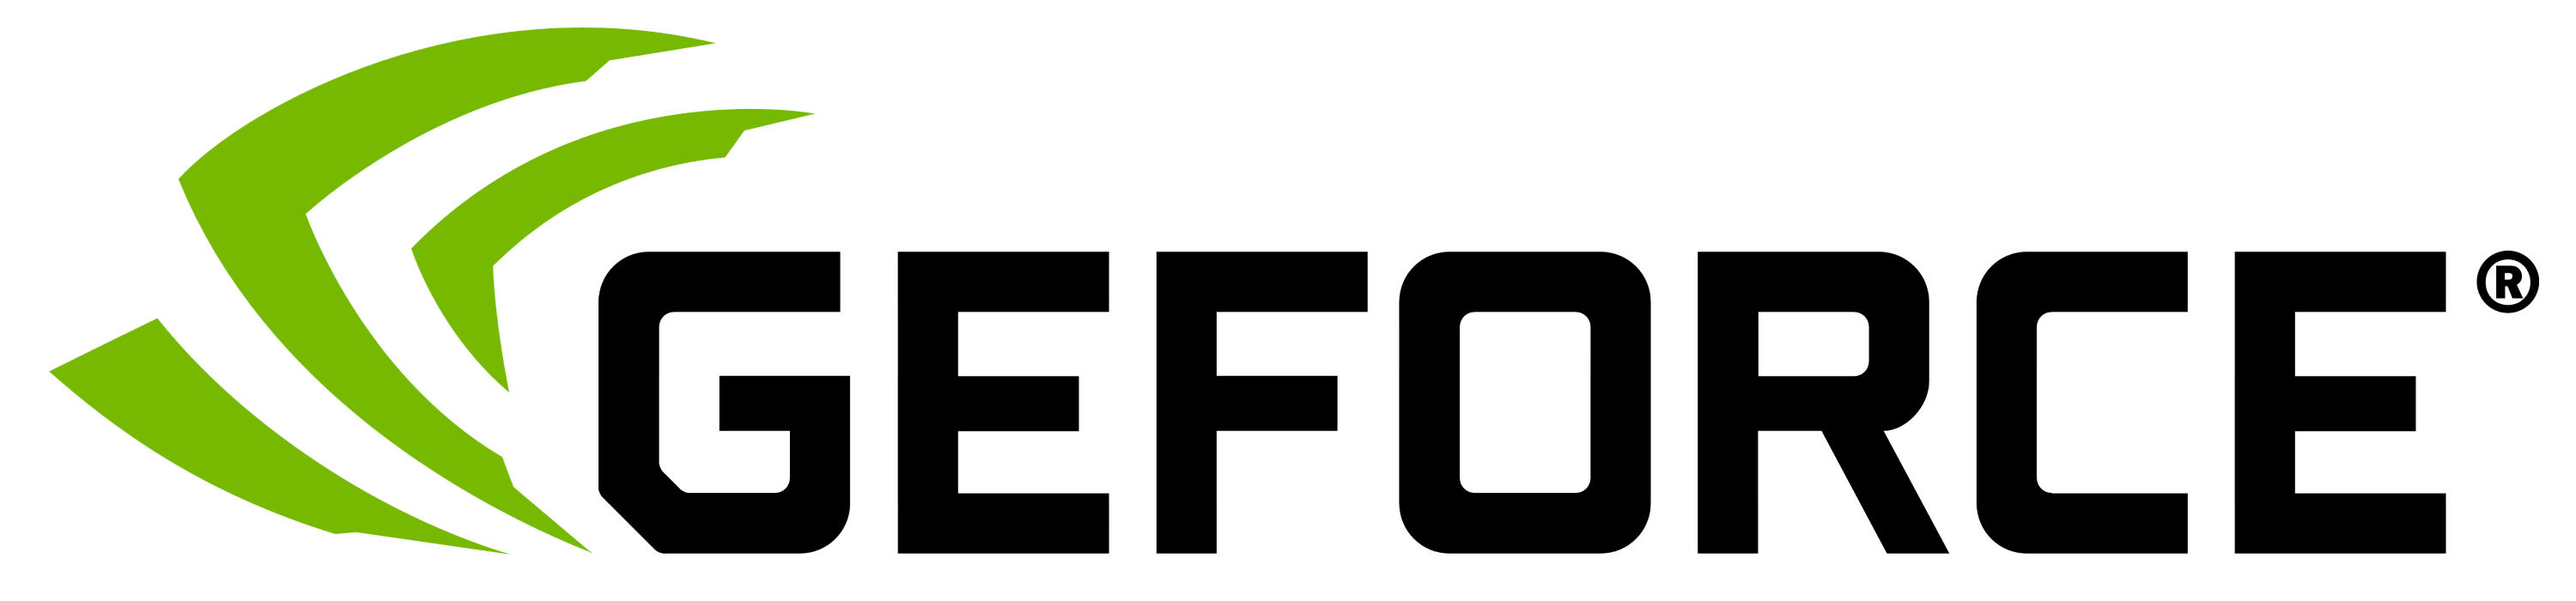 nVidia logo 2020